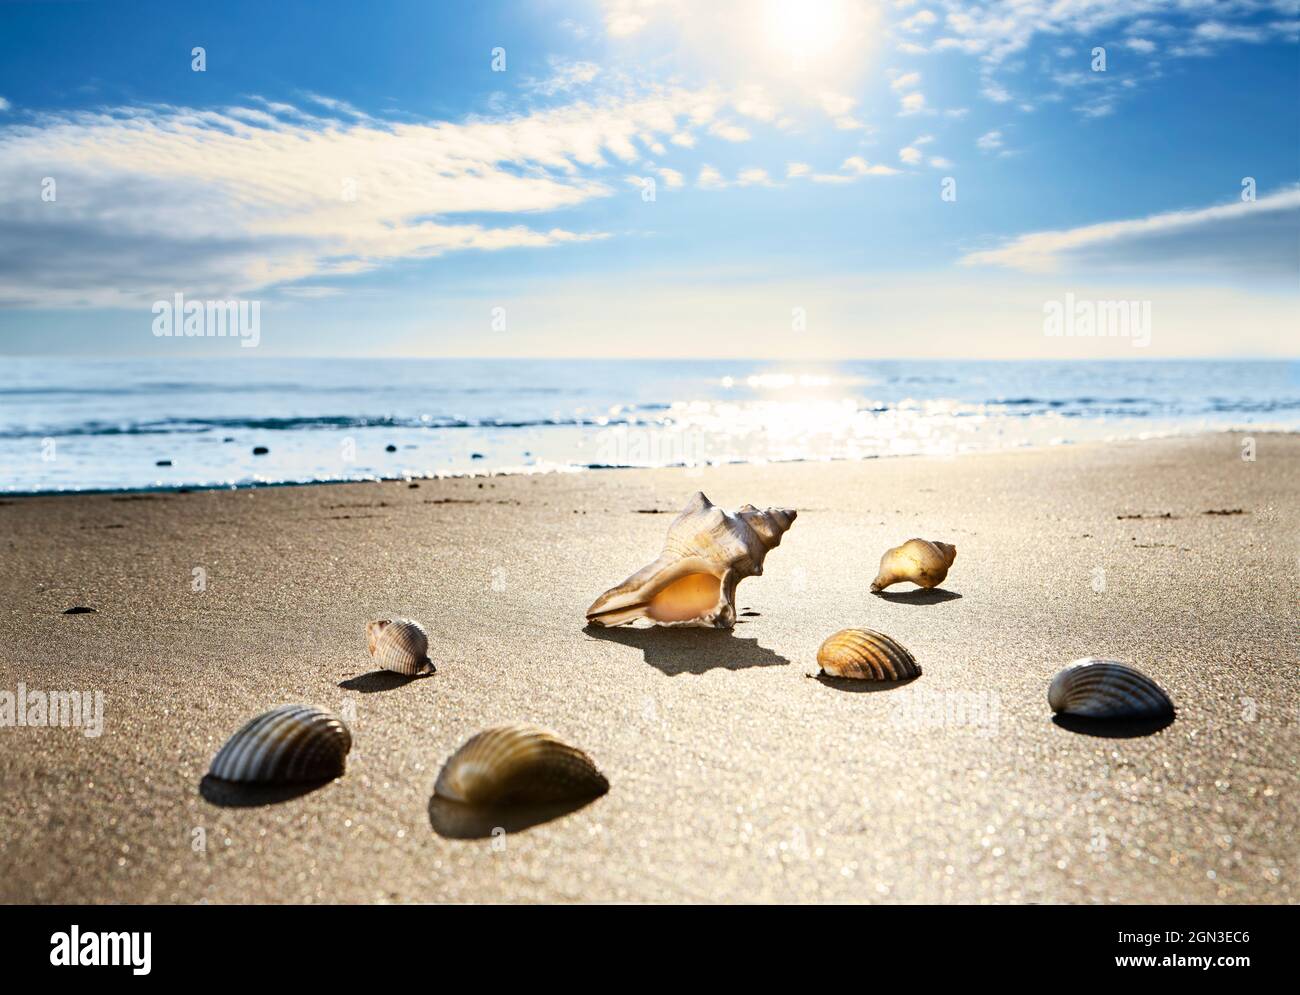 Coquillages se reposant sur la plage comme la marée entre et le soleil brille. Coques rétroéclairées sur la plage. Angle bas tôt le matin Banque D'Images